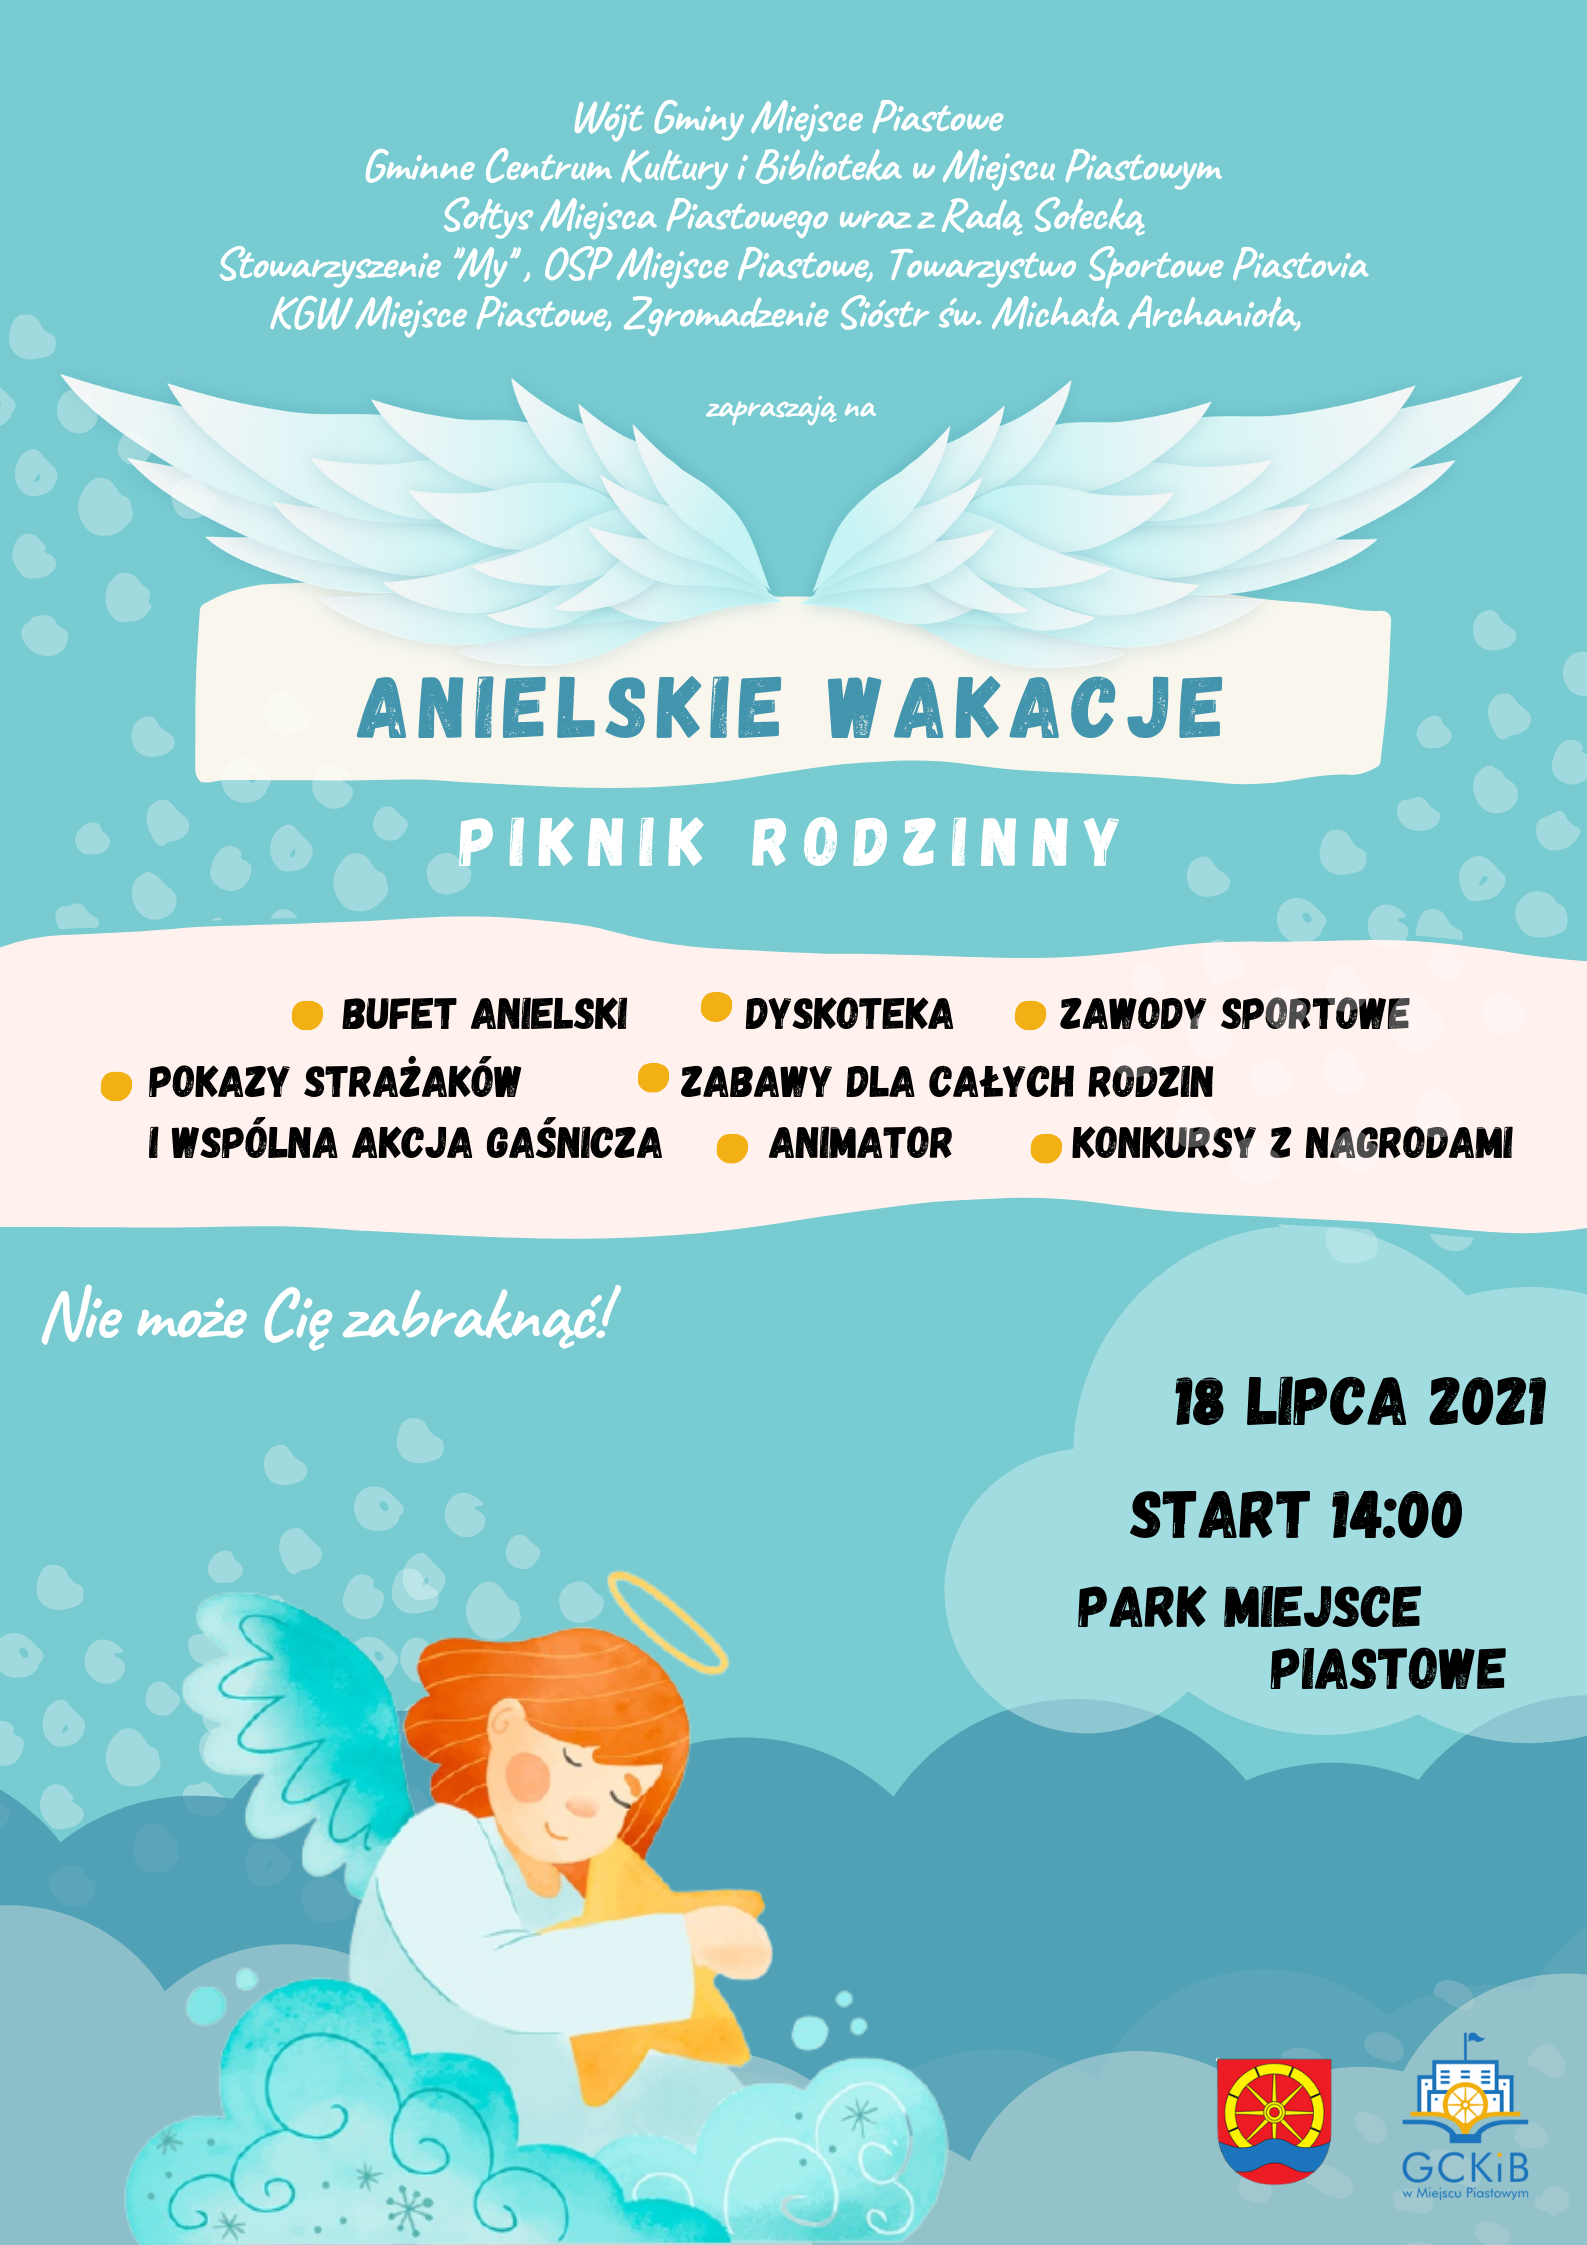 You are currently viewing Zapraszamy na Piknik Rodzinny pod hasłem ,,Anielskie Wakacje”!